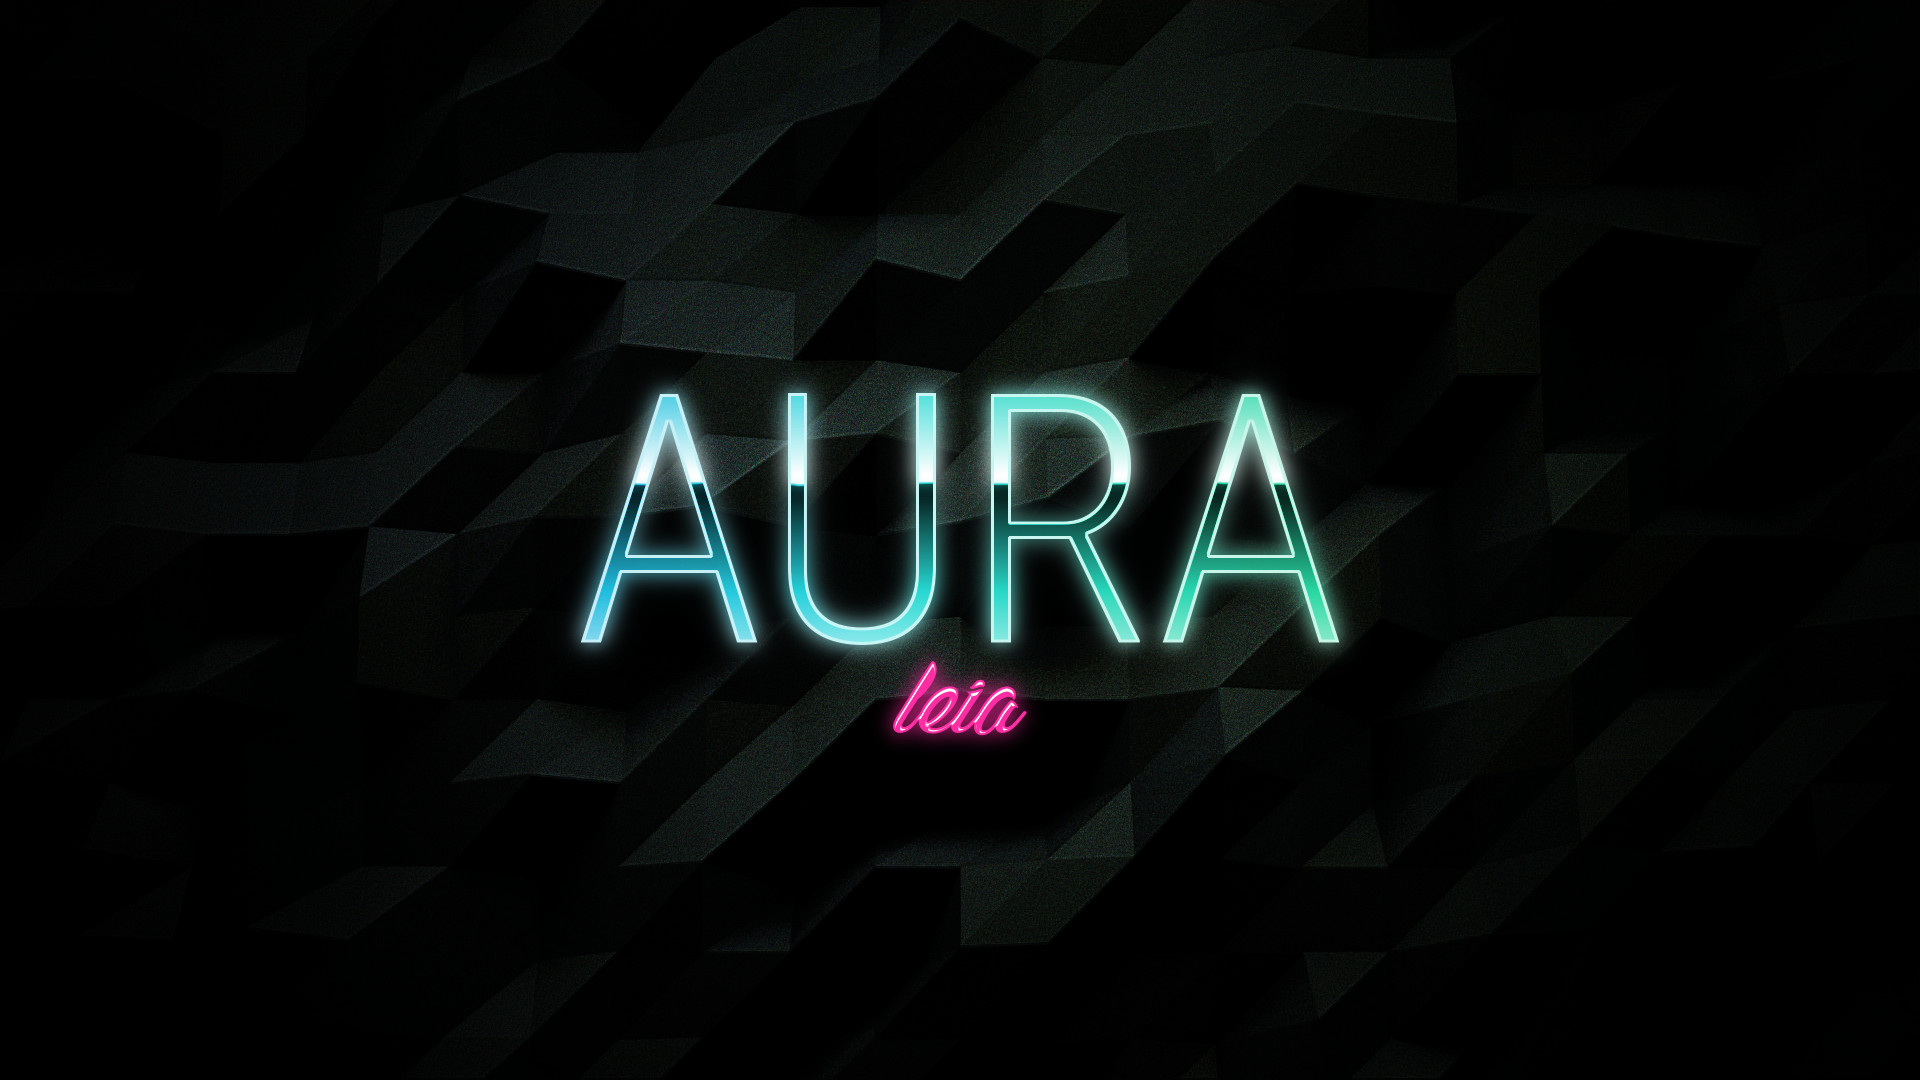 Aura (Leia) splash screen